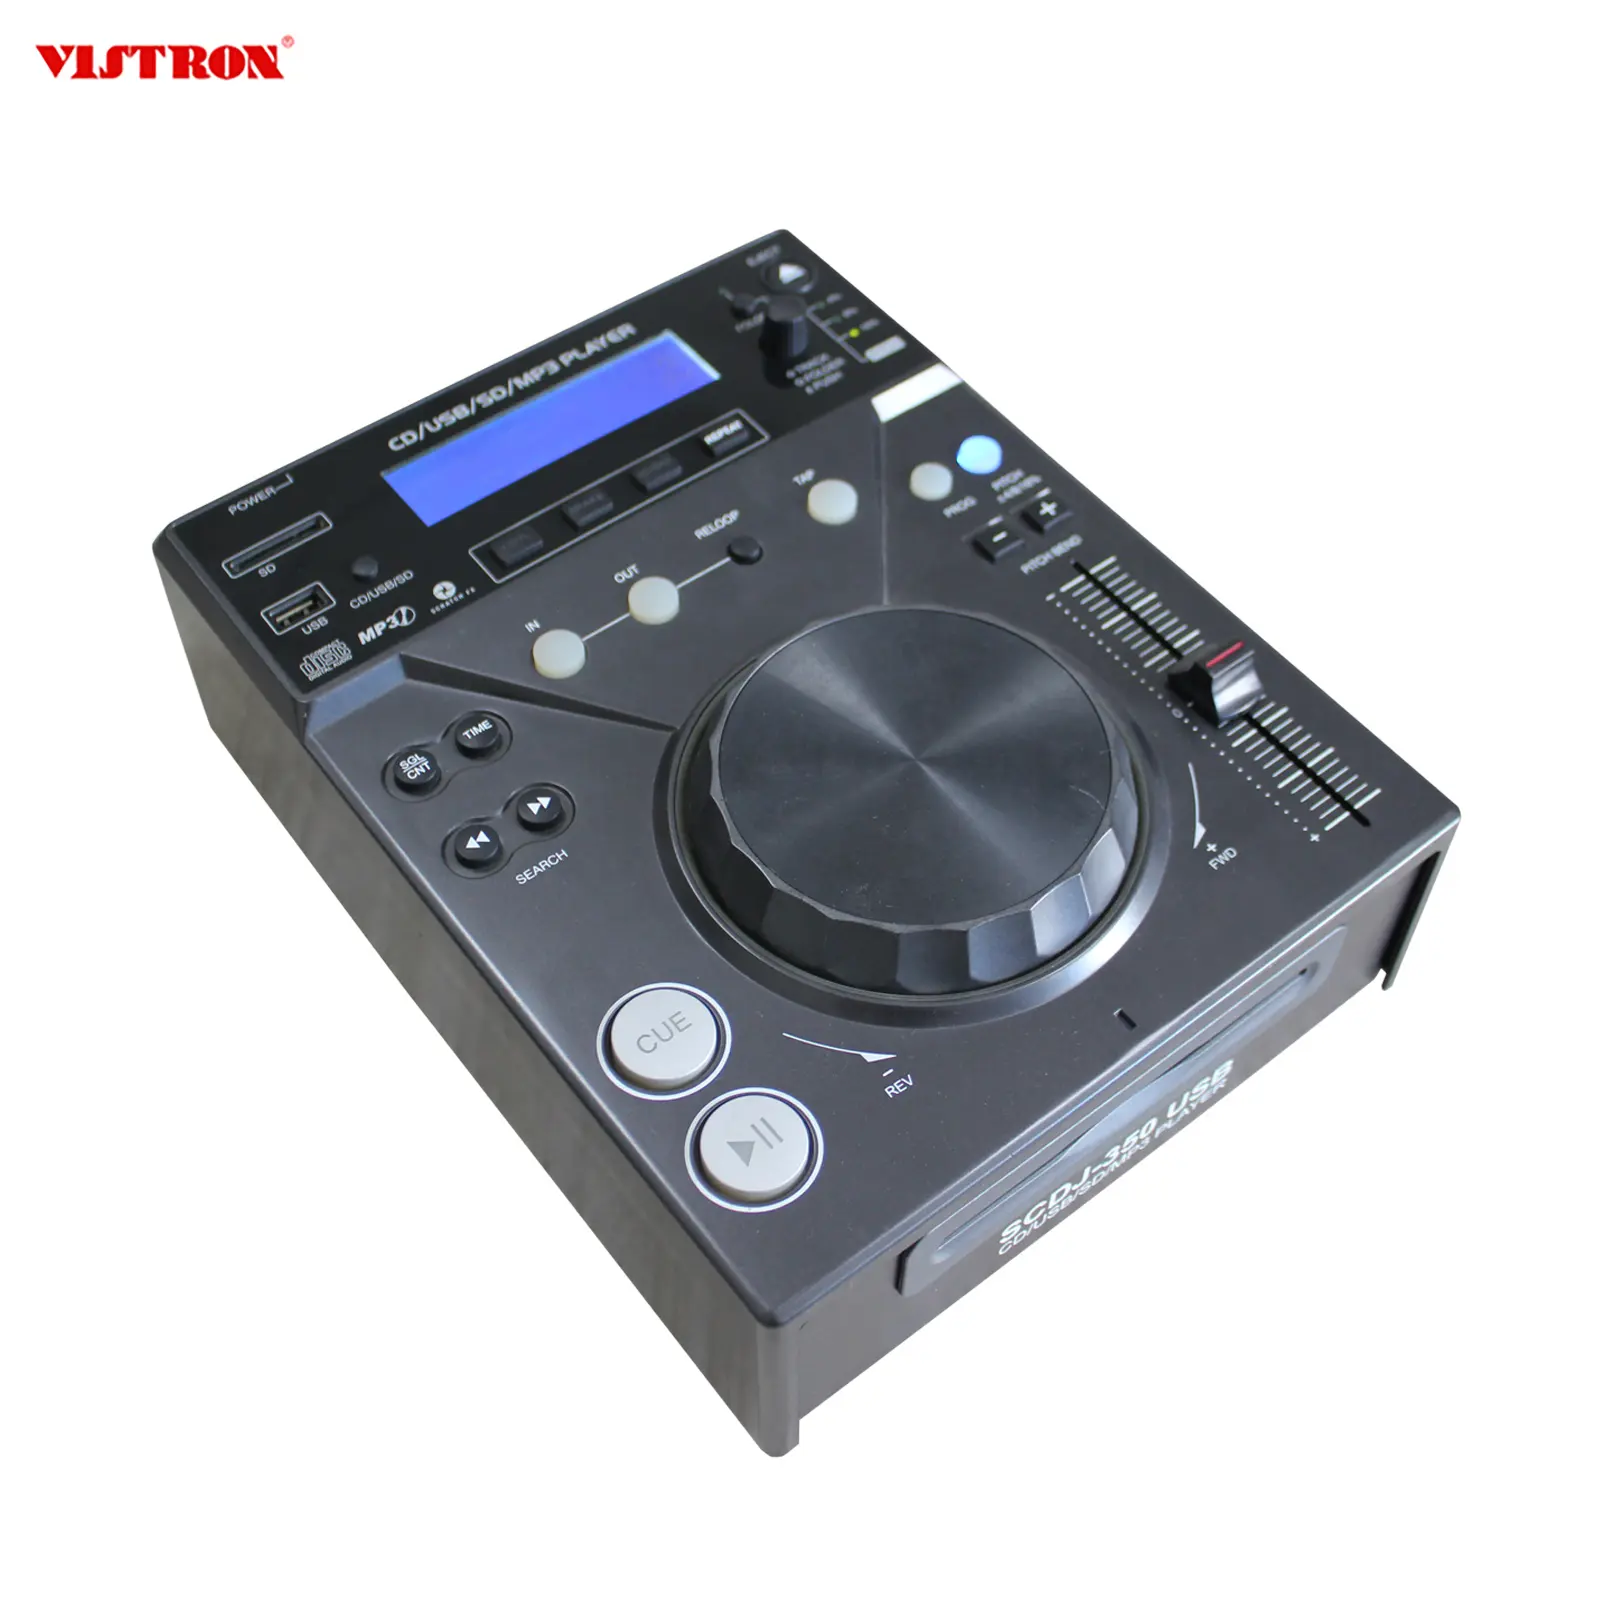 CE Standard CD/USB/SD DJ mixer player SCDJ-350USB